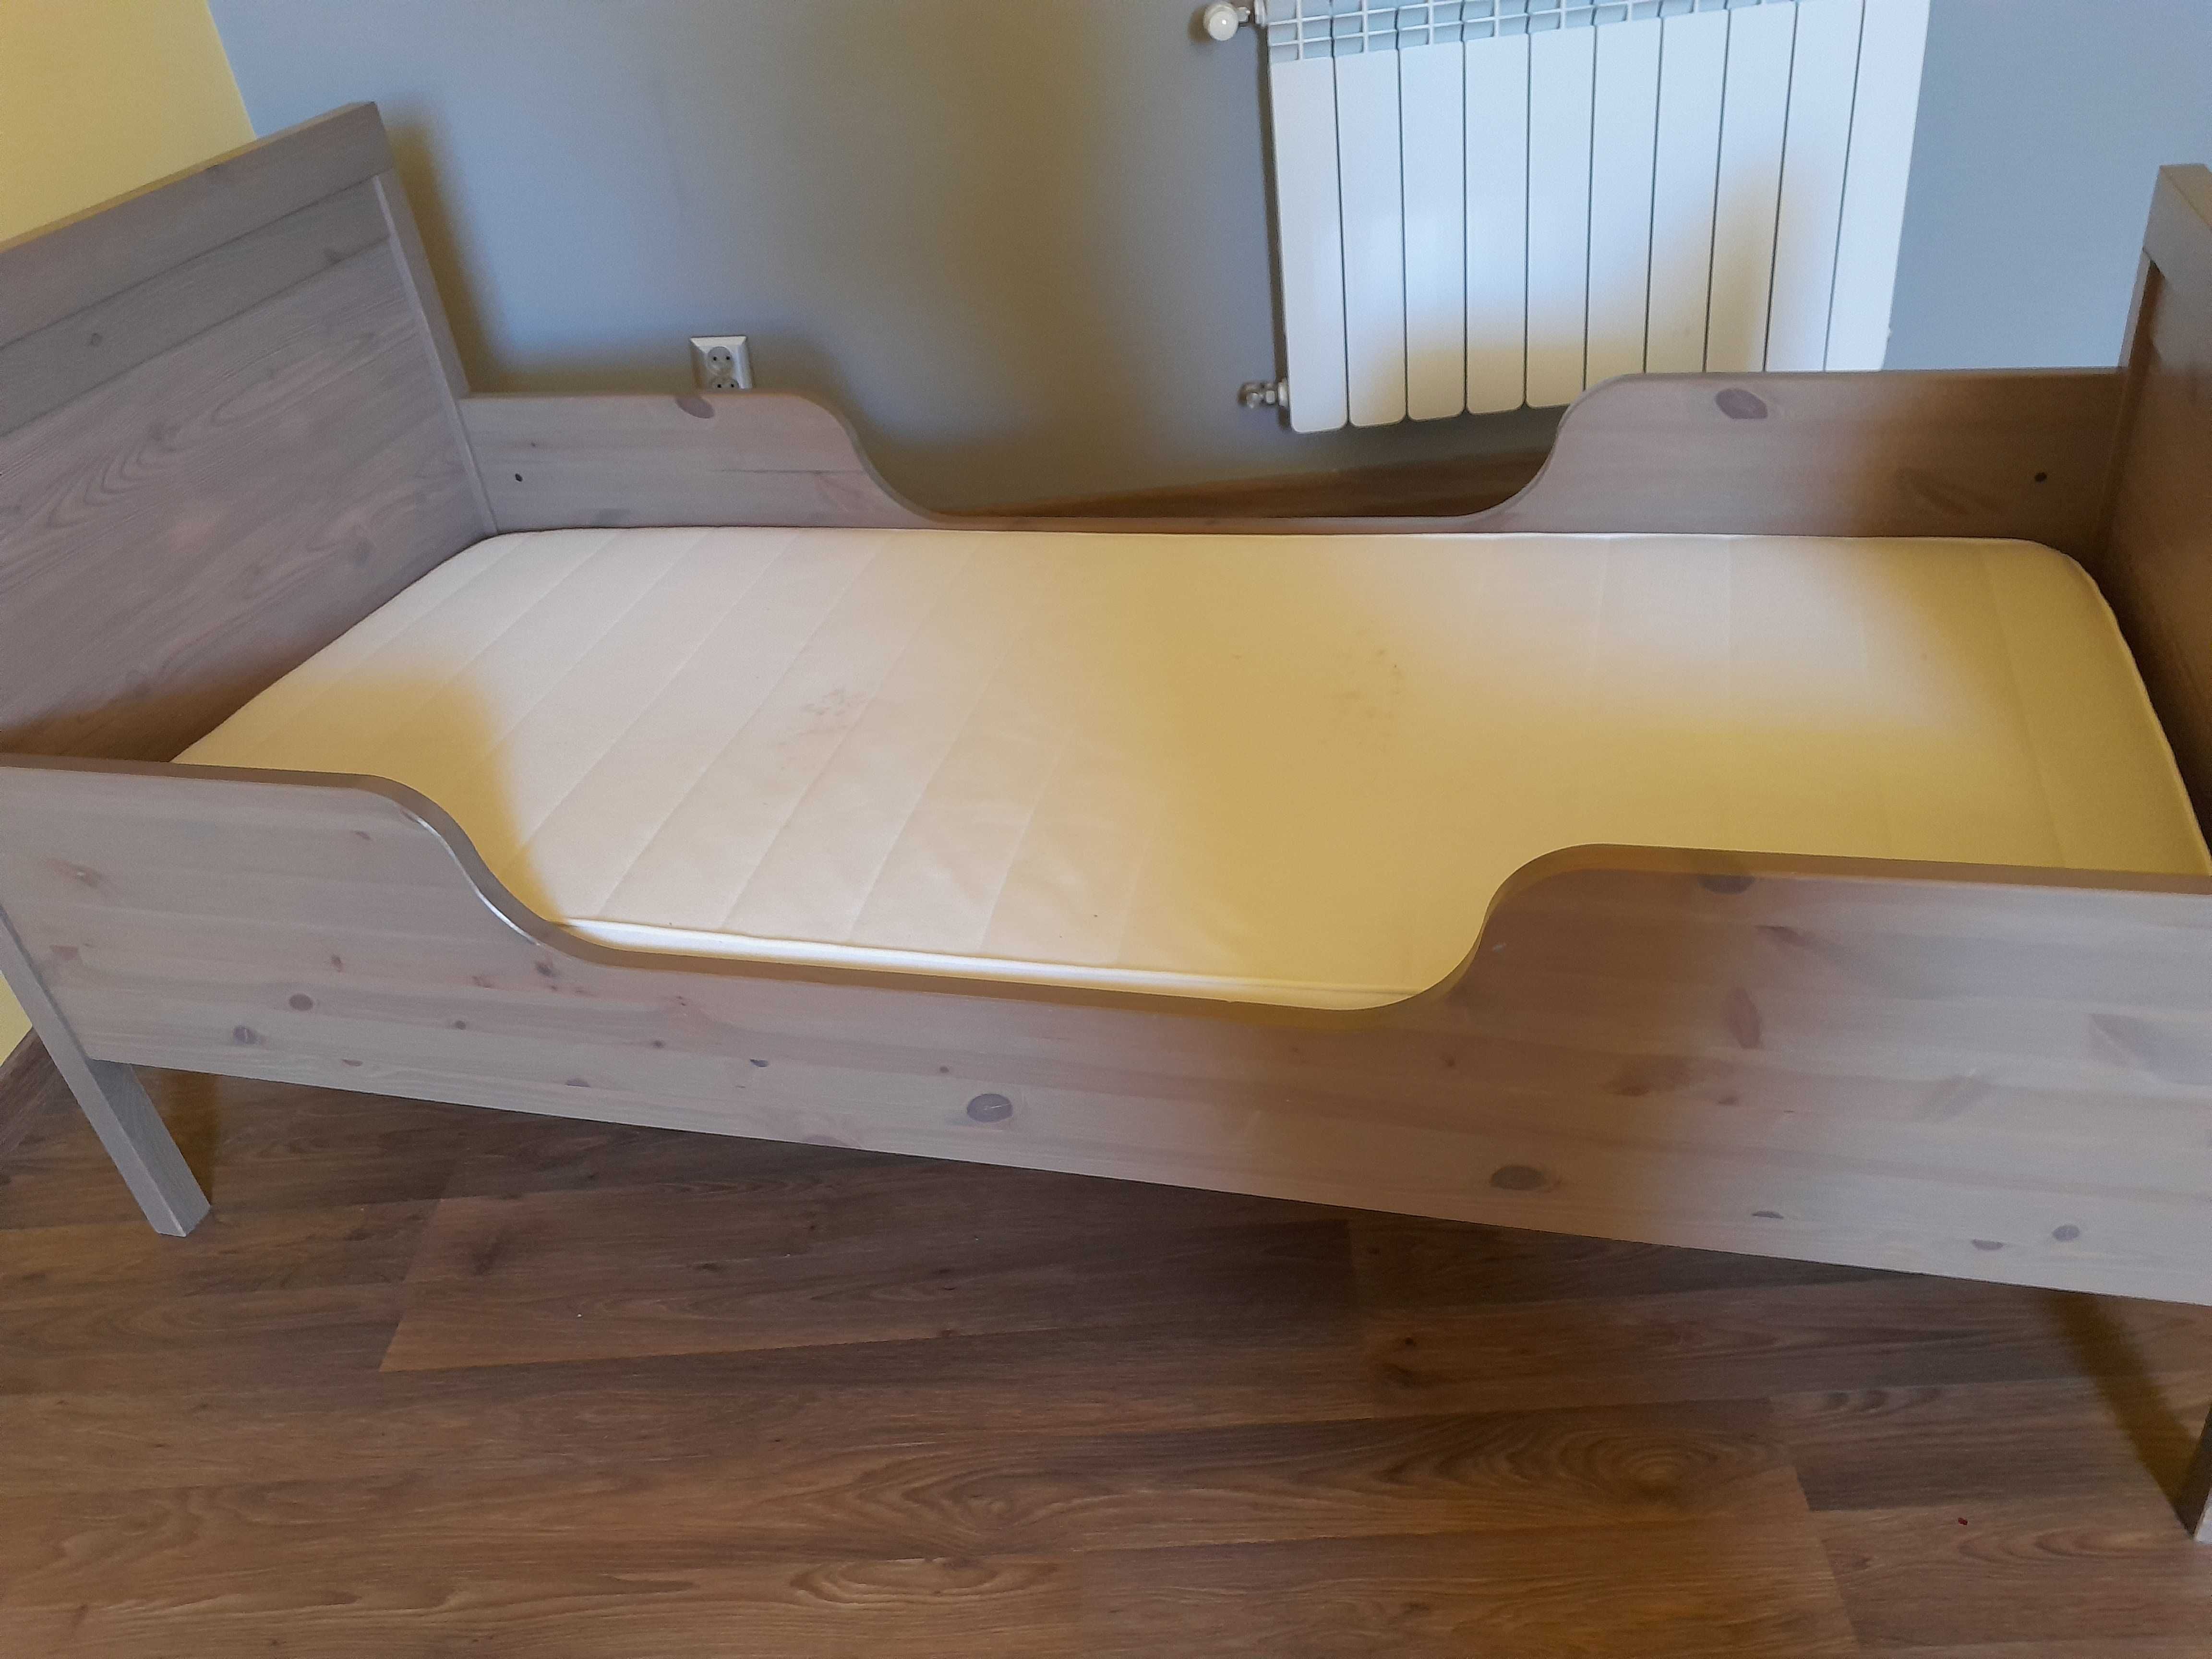 Łóżko sundvik z Ikea szare